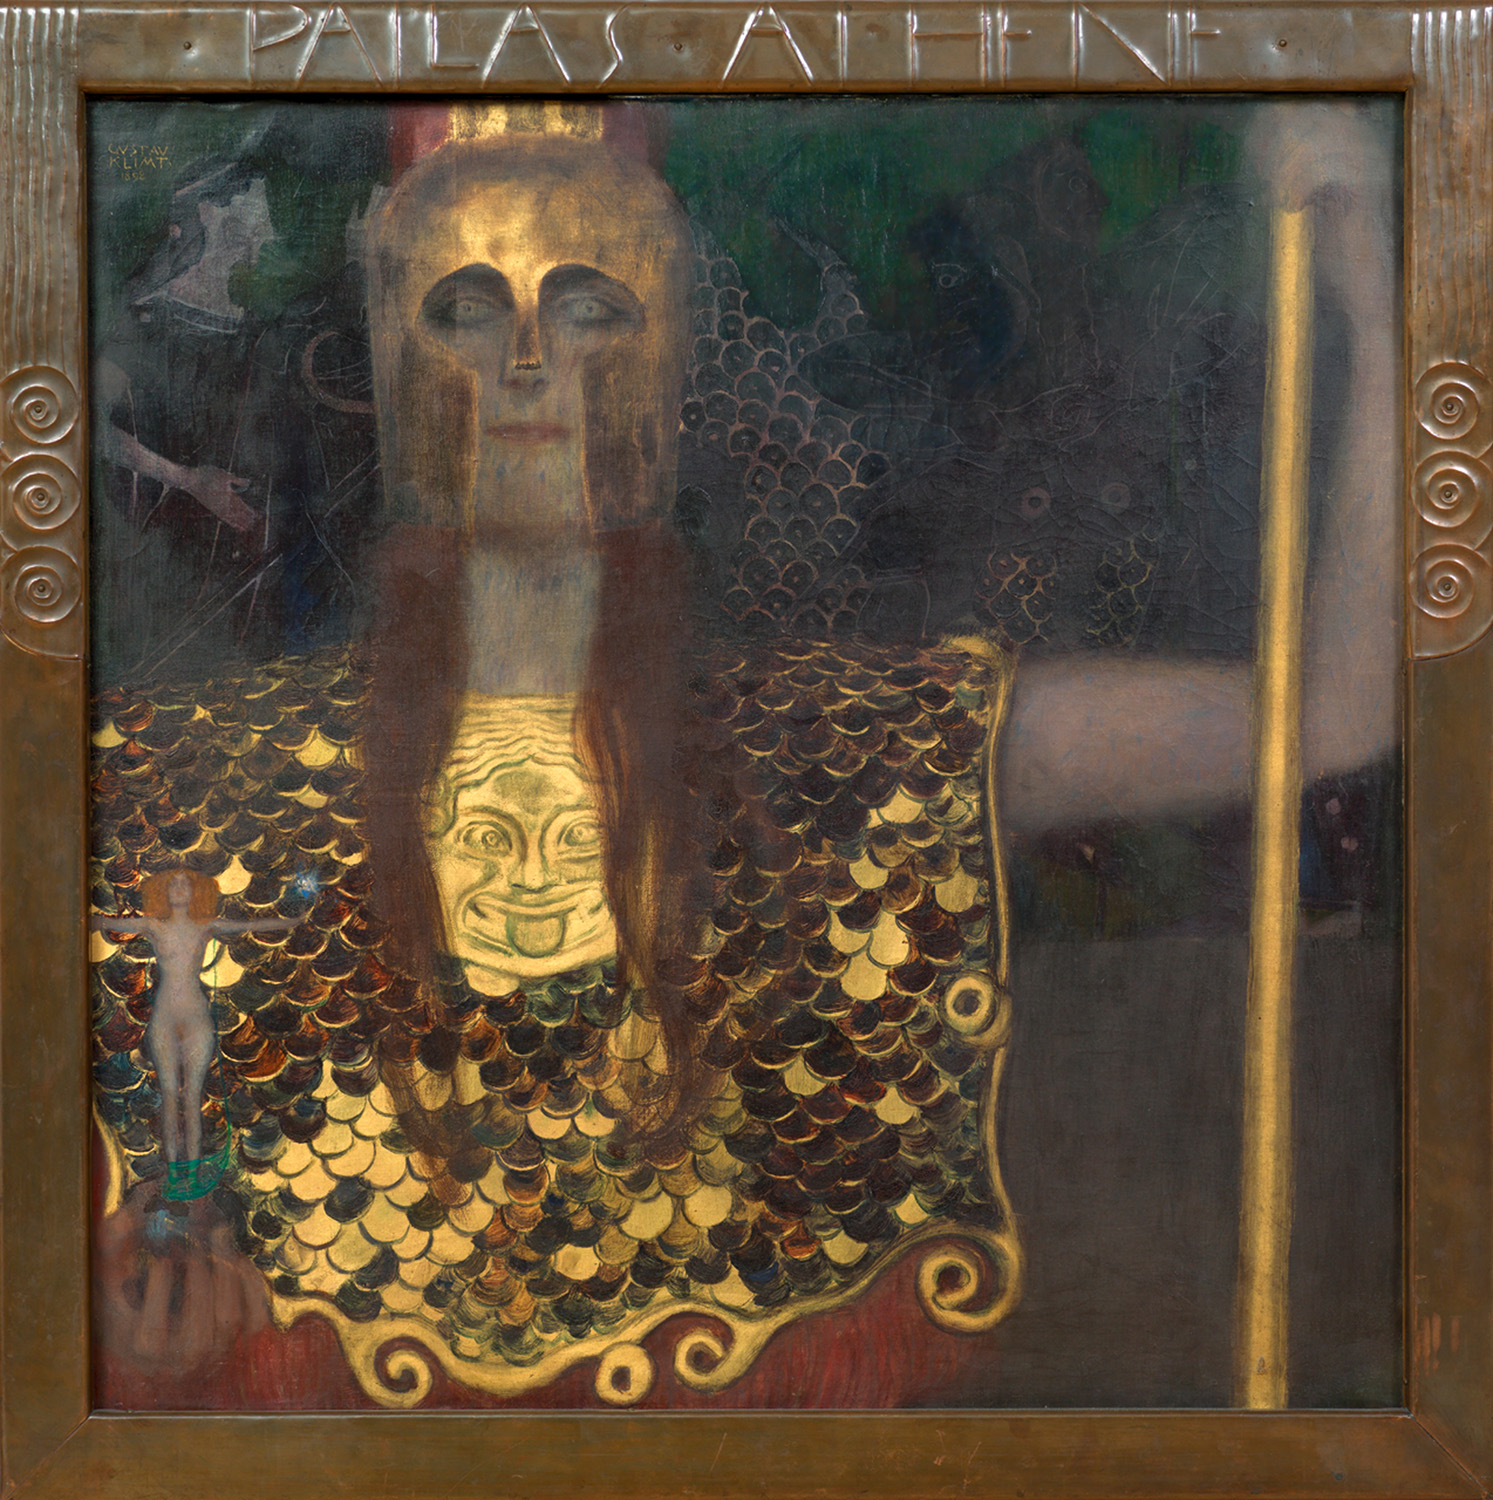 Darstellung der Pallas Athene mit einem goldenen Helm und Brustpanzer, in der rechten Hand hält sie eine nackte Figur die als Nuda Veritas - Nackte Wahrheit- gedeutet werden kann